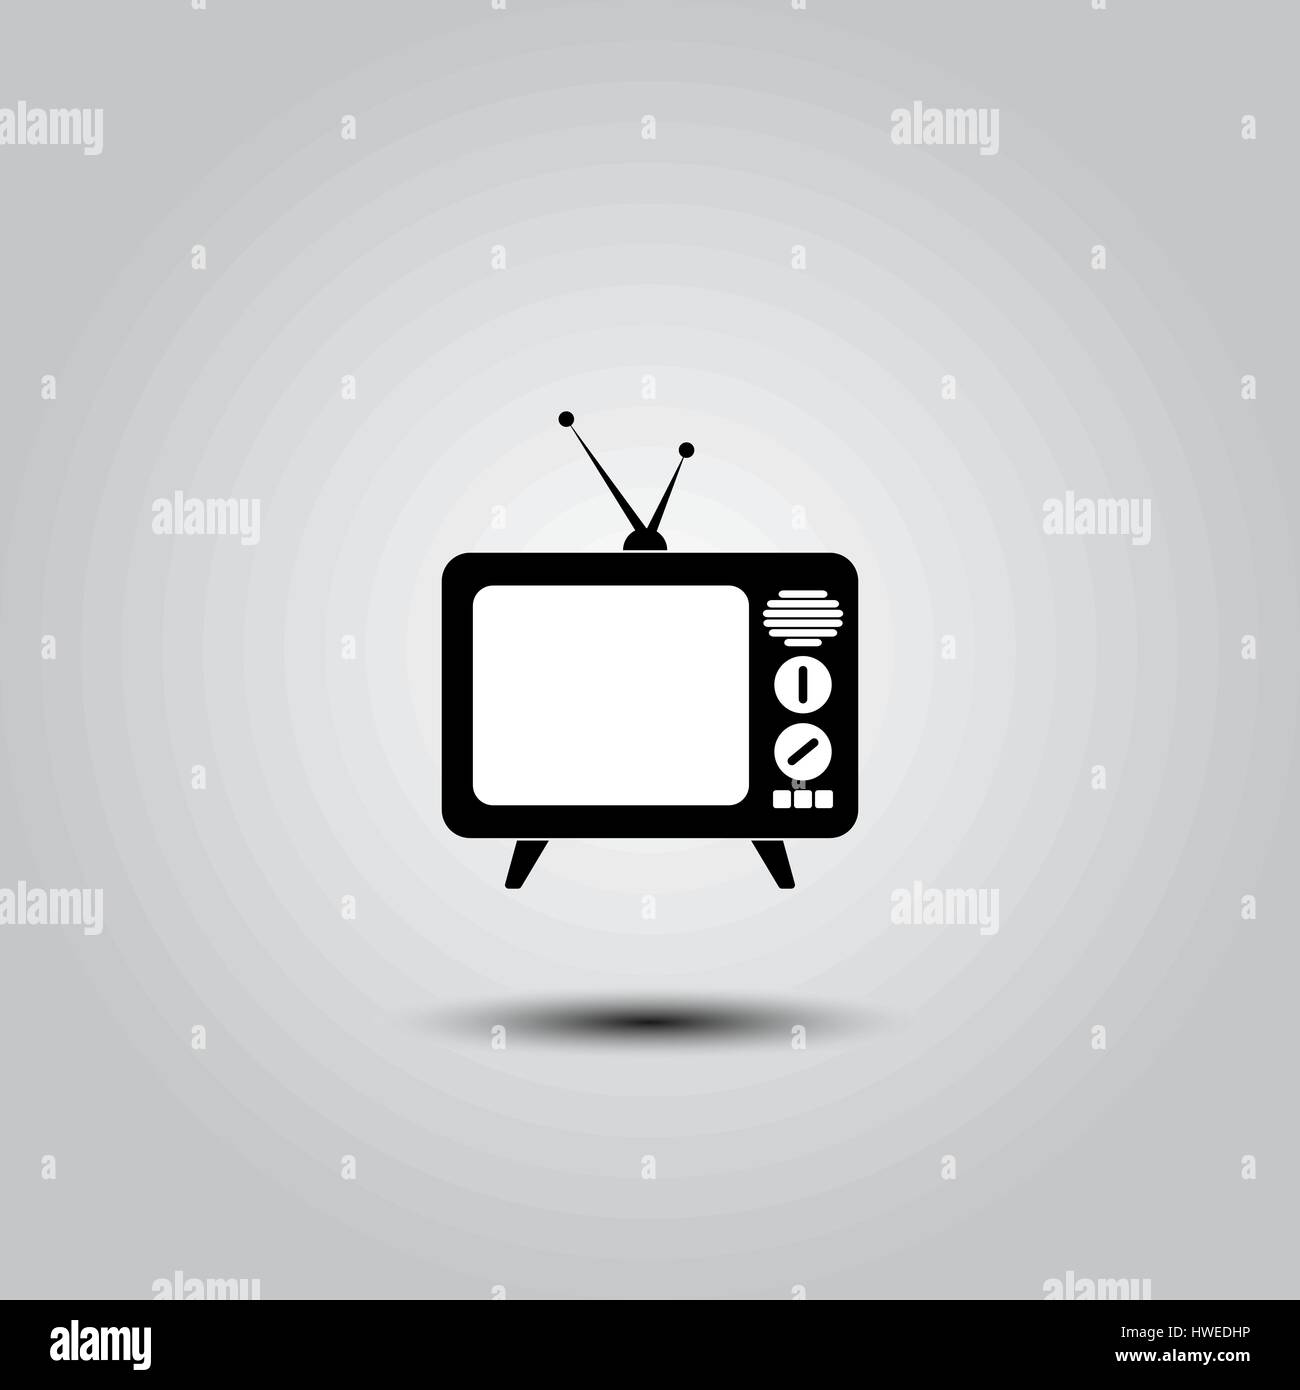 L'icône TV dans un style plat isolé sur fond gris. Symbole de la télévision pour votre web site design, logo, l'app, l'assurance-chômage. Illustration vectorielle, EPS10. Illustration de Vecteur